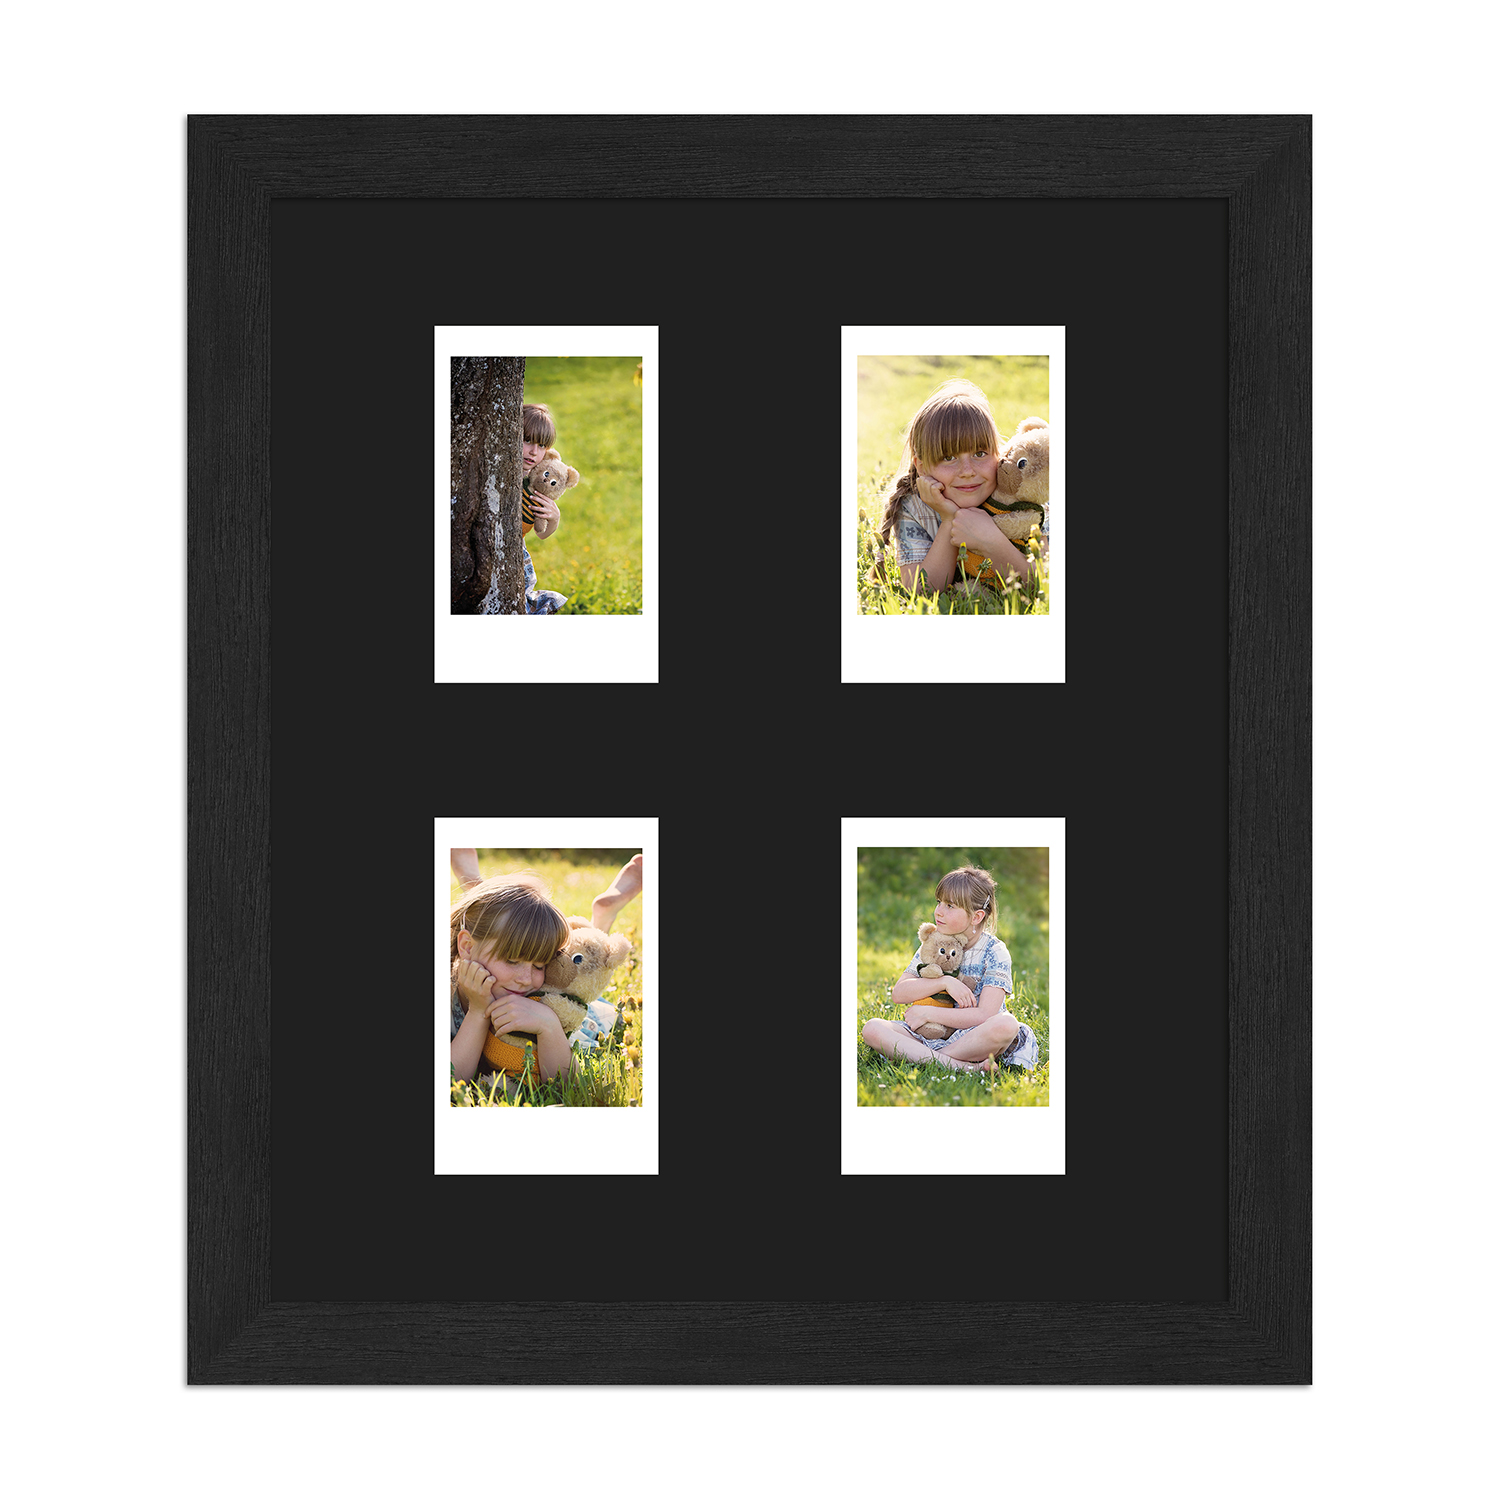  Instax Mini Bilderrahmen H960 modern mit Passepartout schwarz für 4 Ausschnitte